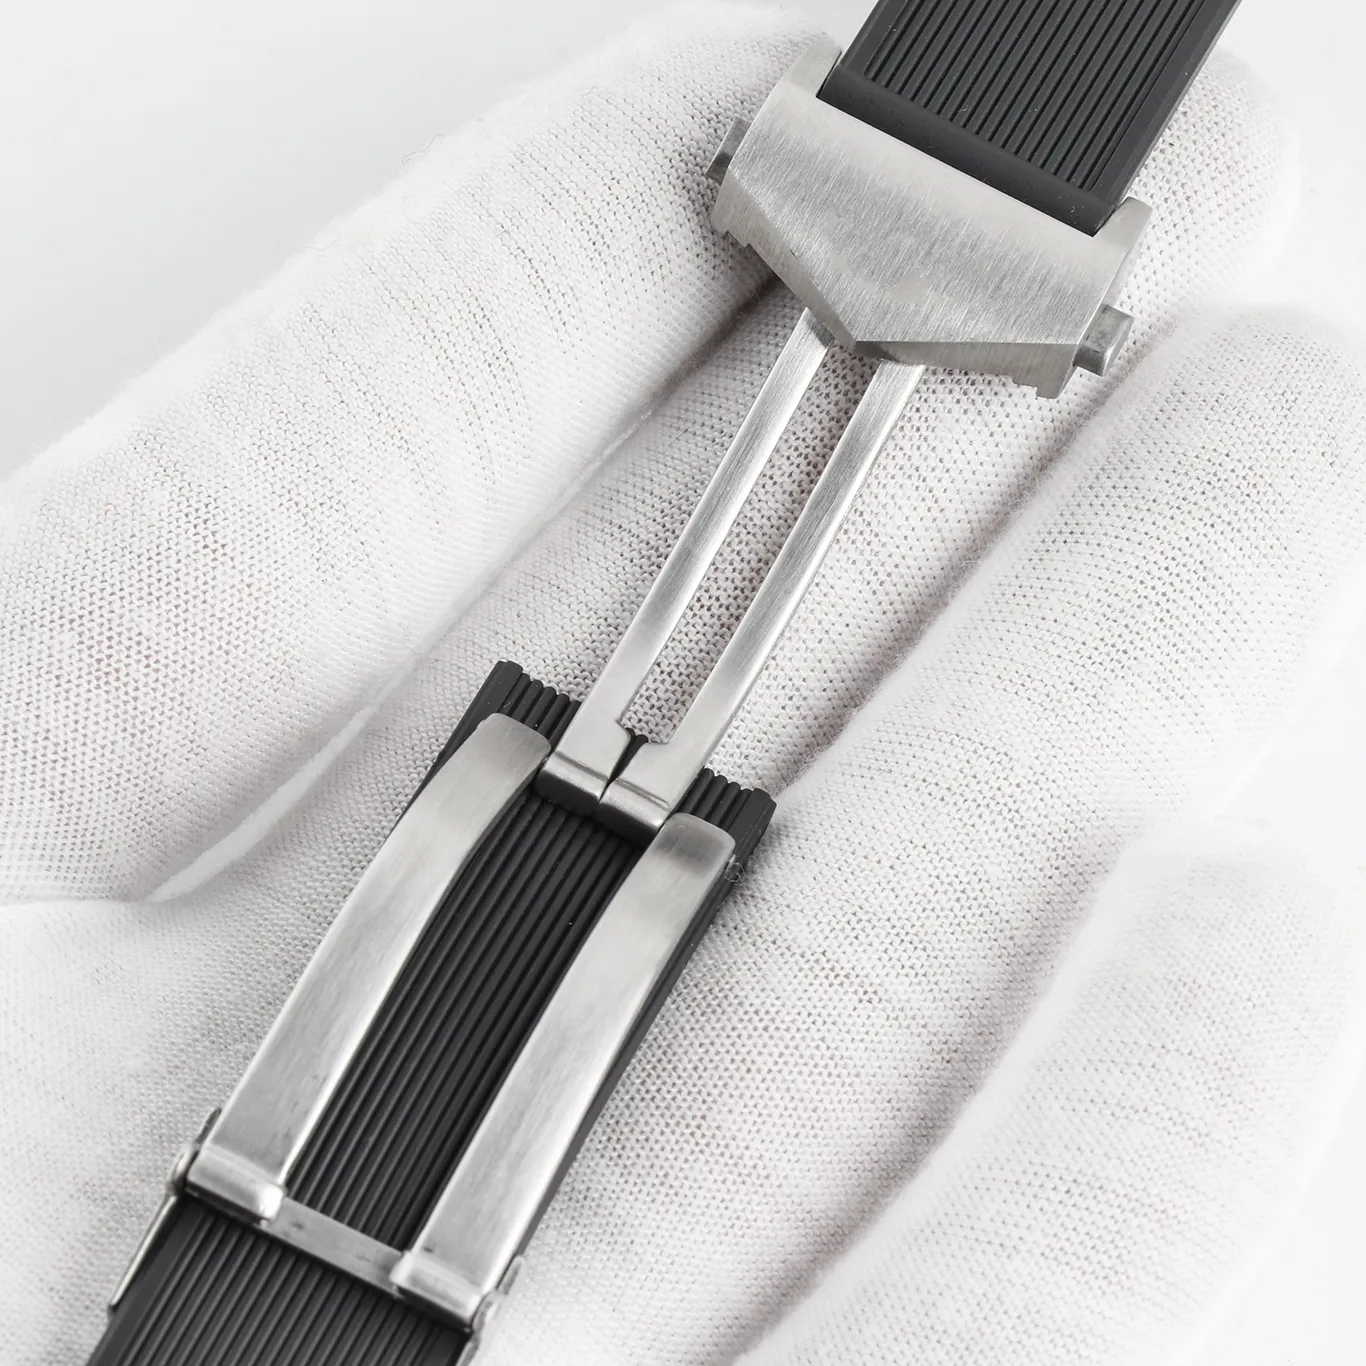 Vattentät gummi Watchband Rostfritt stål Fold Buckle Watch Band Strap For Aquaracer Armband Watch Man 22-18mm Black Blue Brown287o